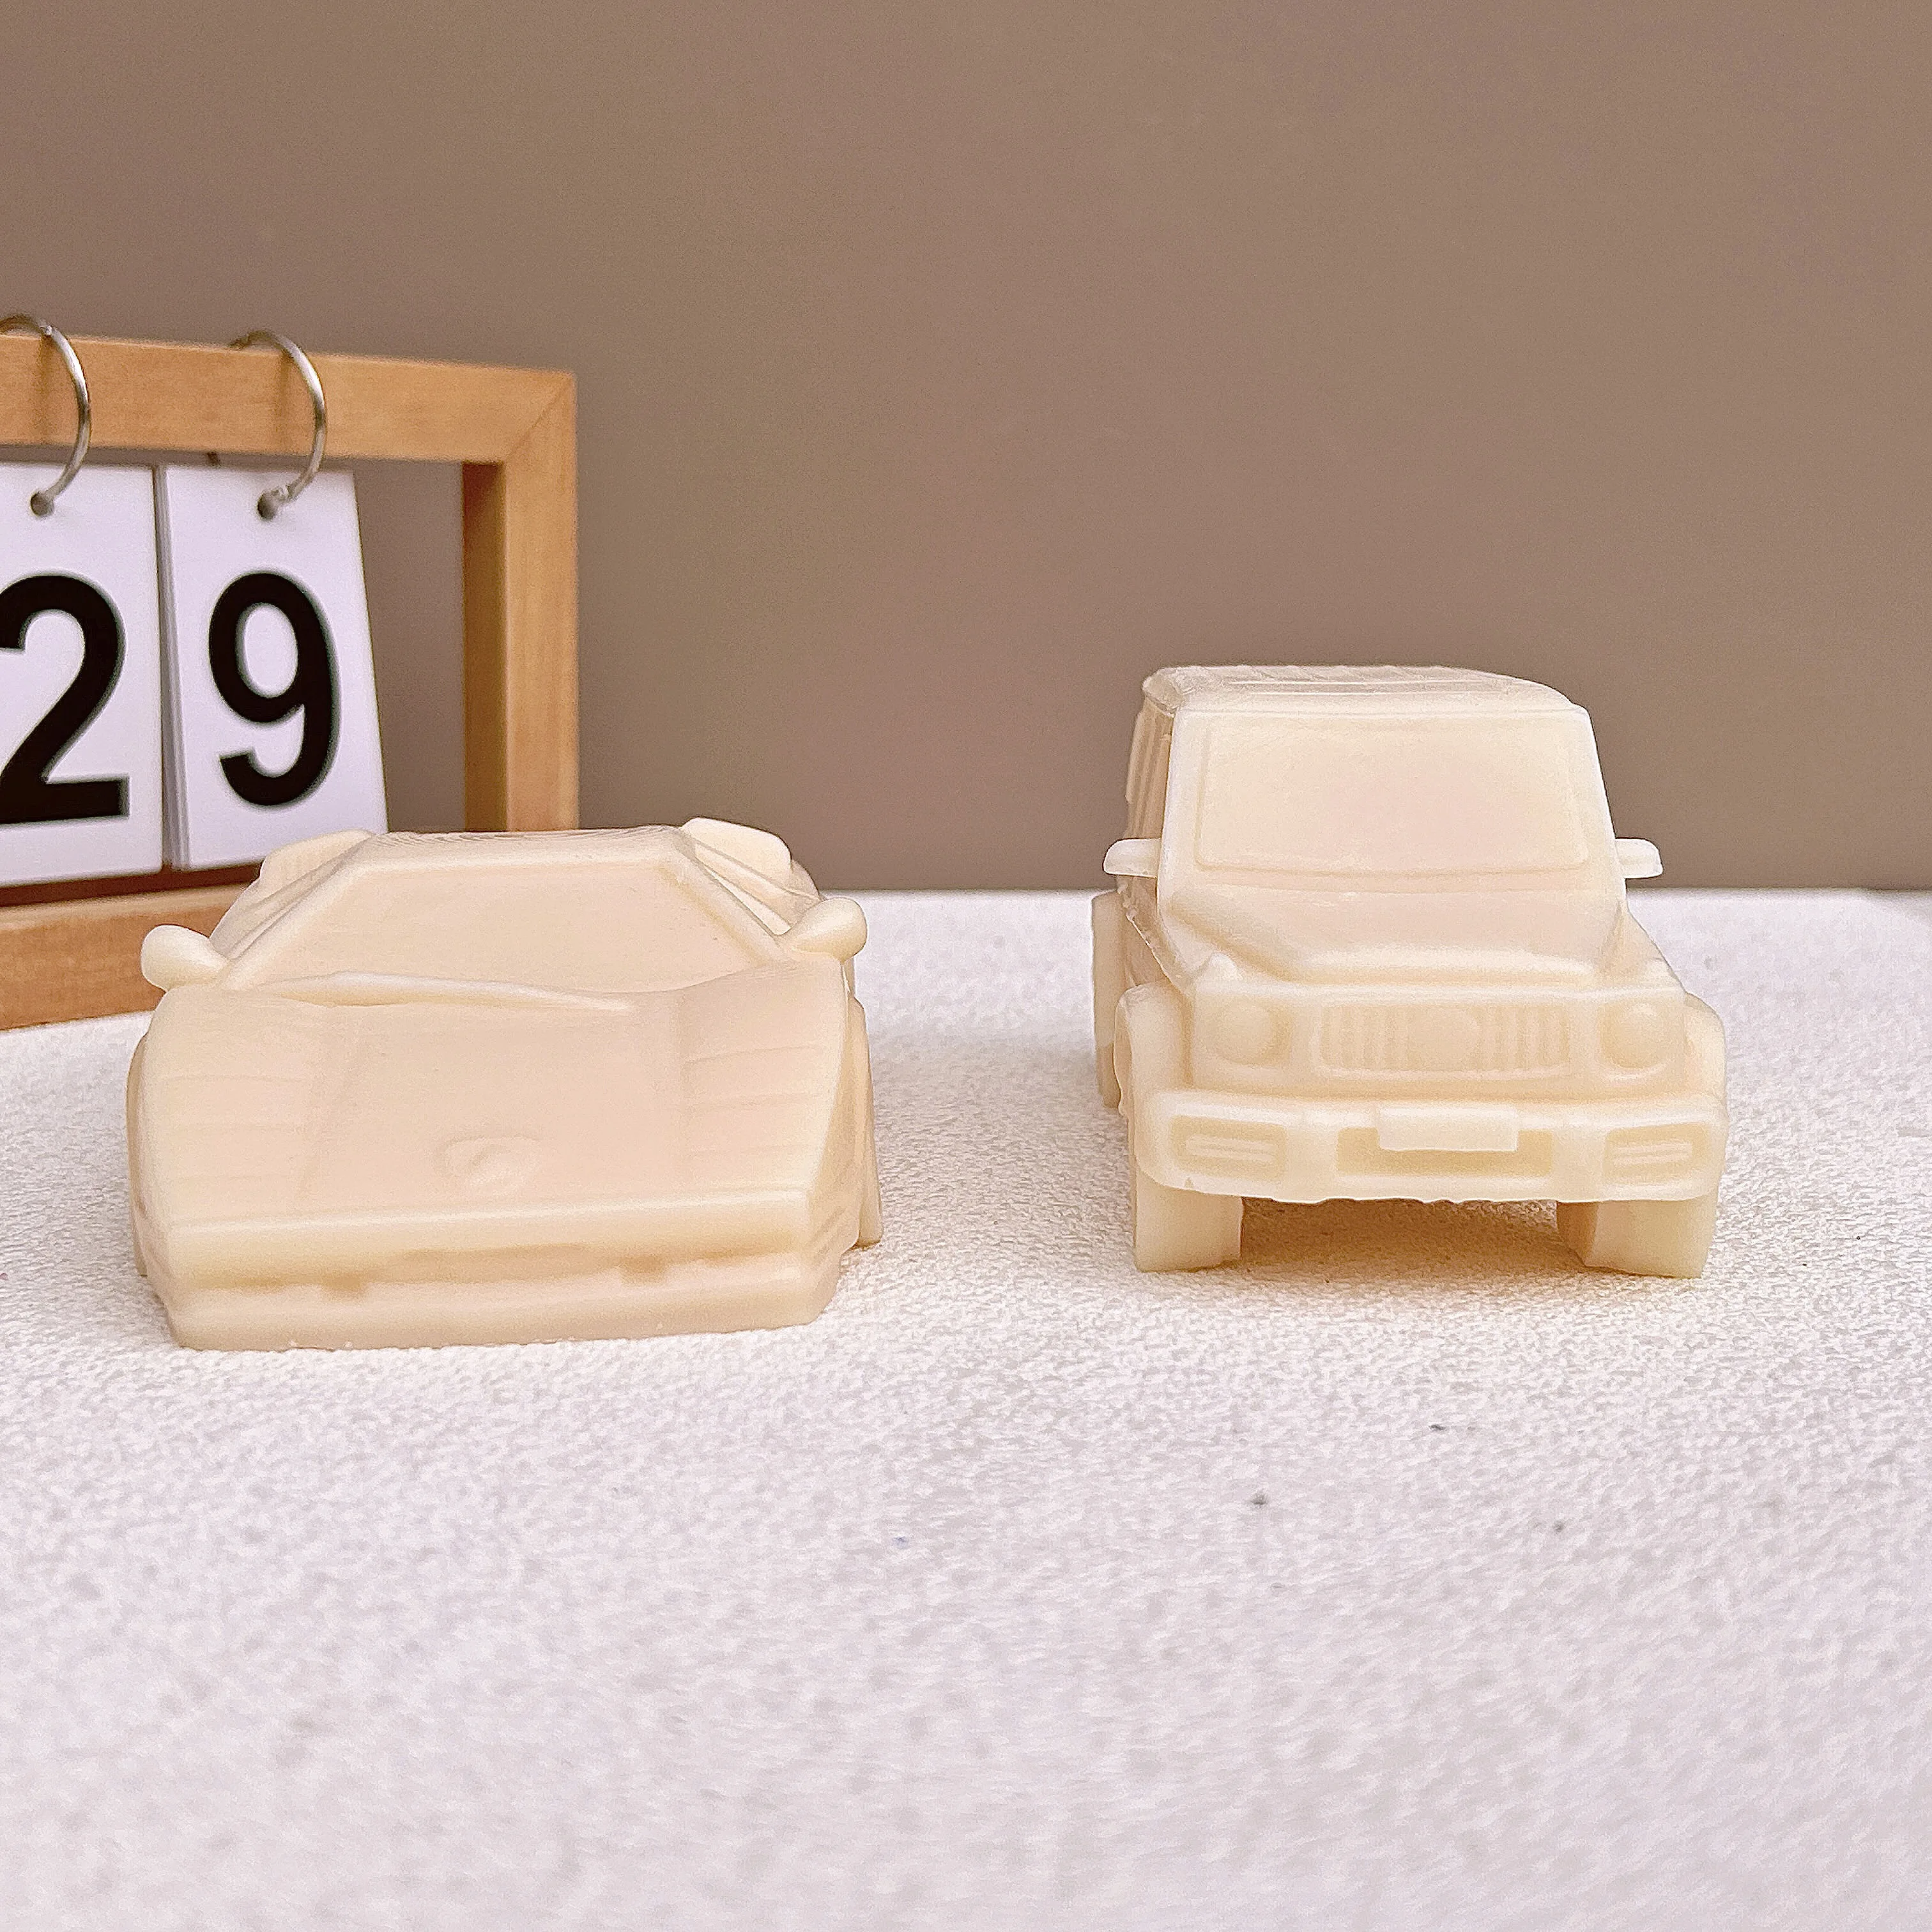 3D Araba Mum Kalıp Araba El Sabunu Alçı Reçine Kalıp çikolatalı kek Dekorasyon Pişirme Araçları Ev Hediyeler - 1